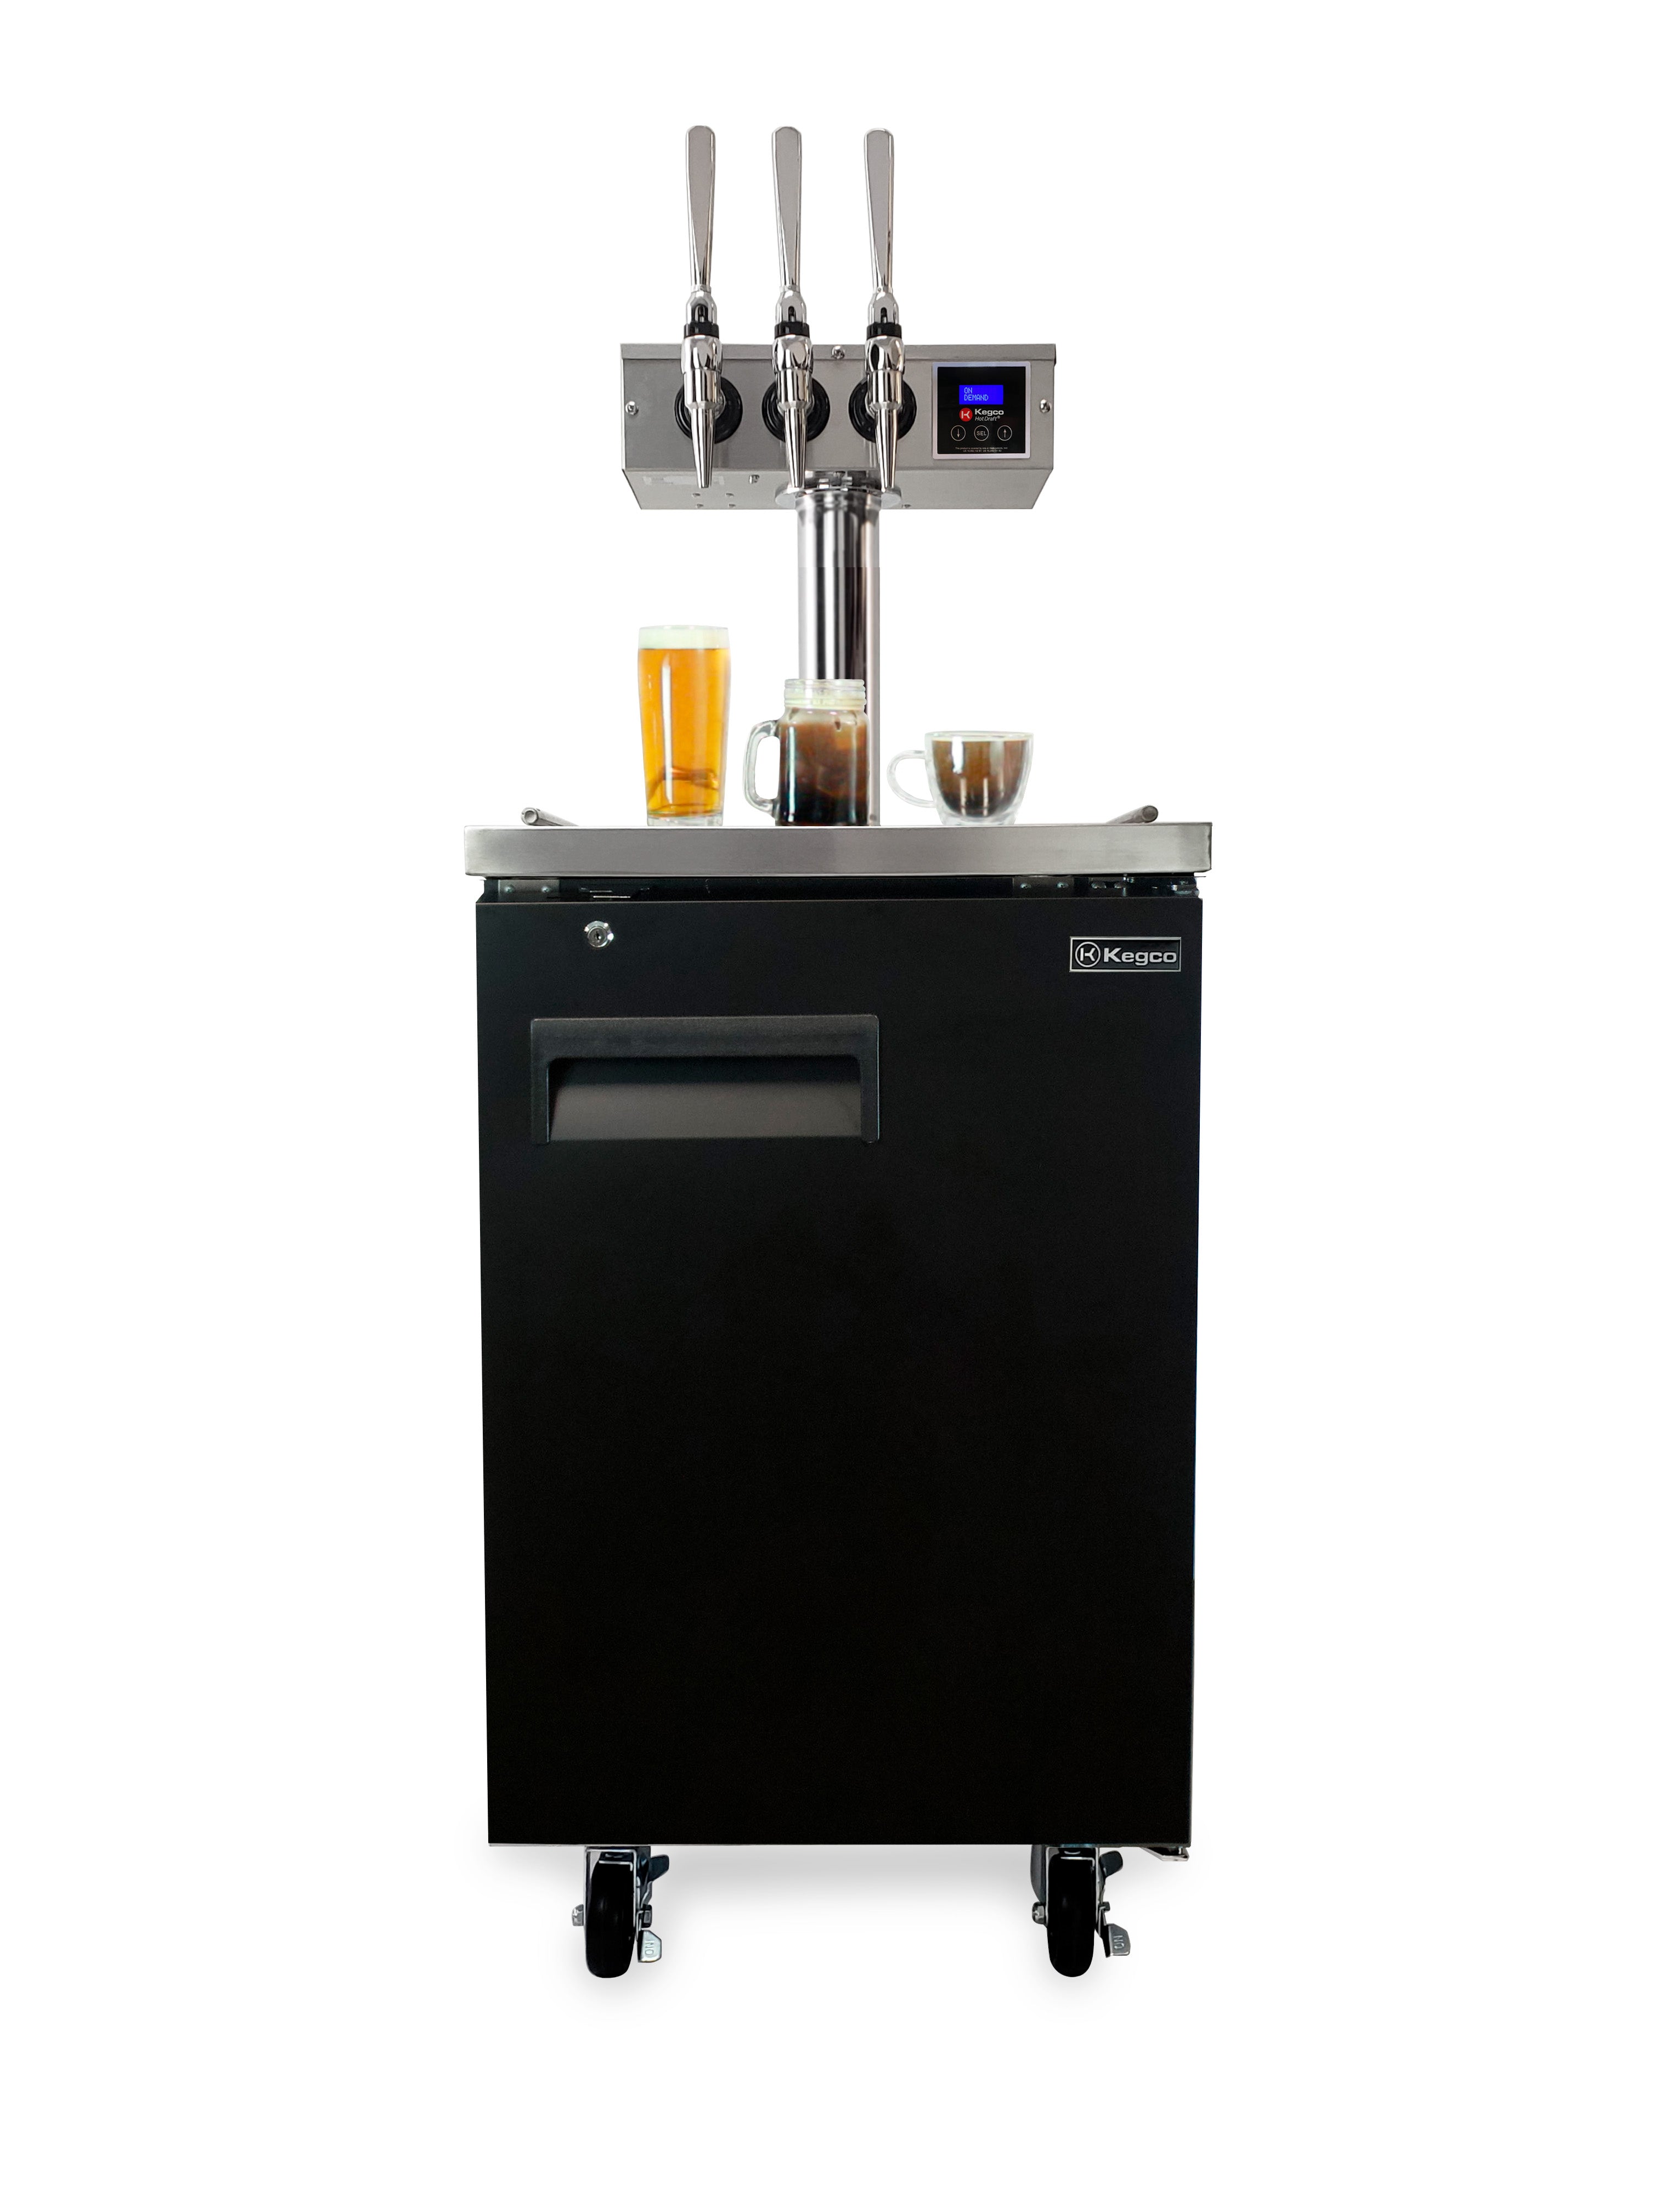 Kegco XCK-HDT-3B &reg; Triple Faucet Commercial Kegerator Hot Draft Tap Coffee Keg Dispenser - Black